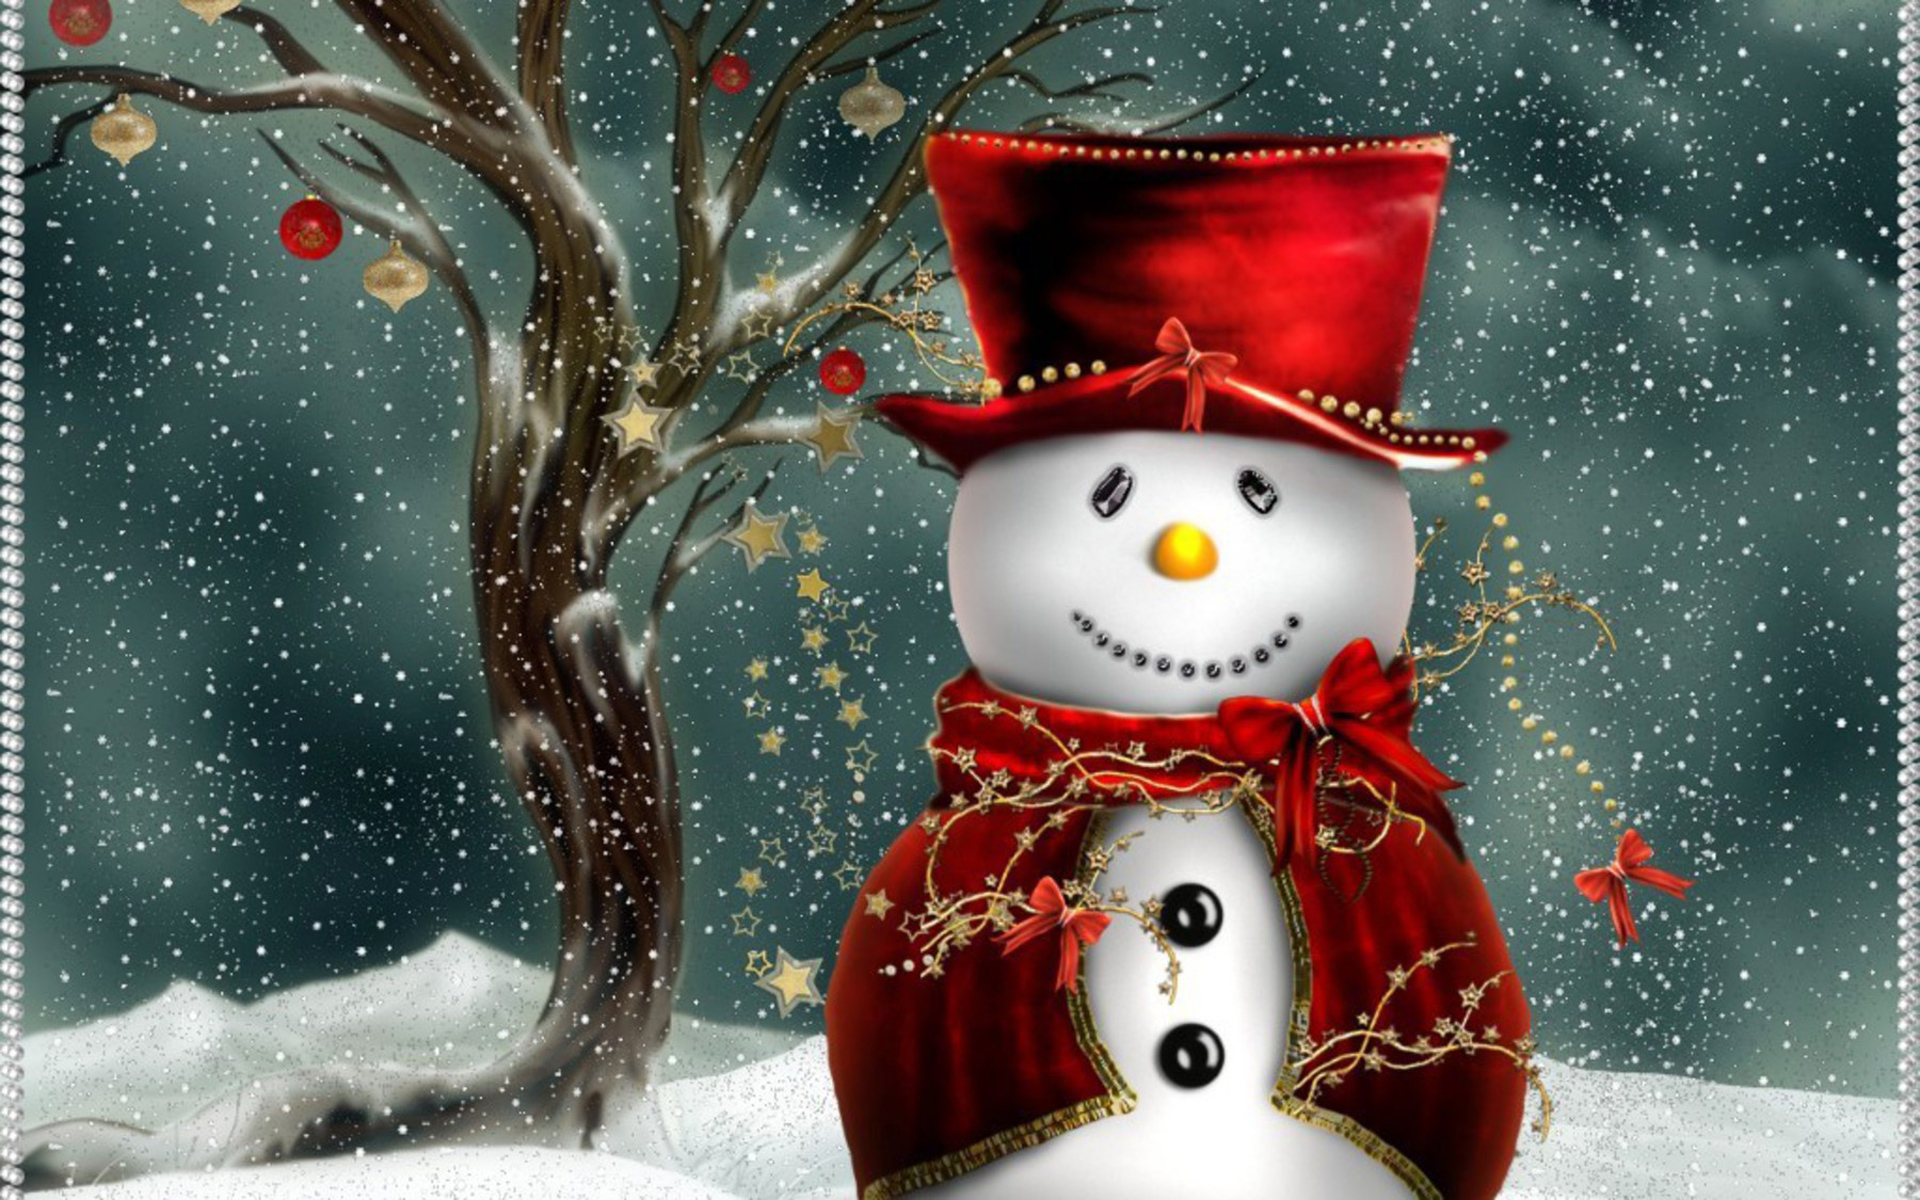 Cute Christmas Snowman Puter Desktop Wallpaper Pictures Image